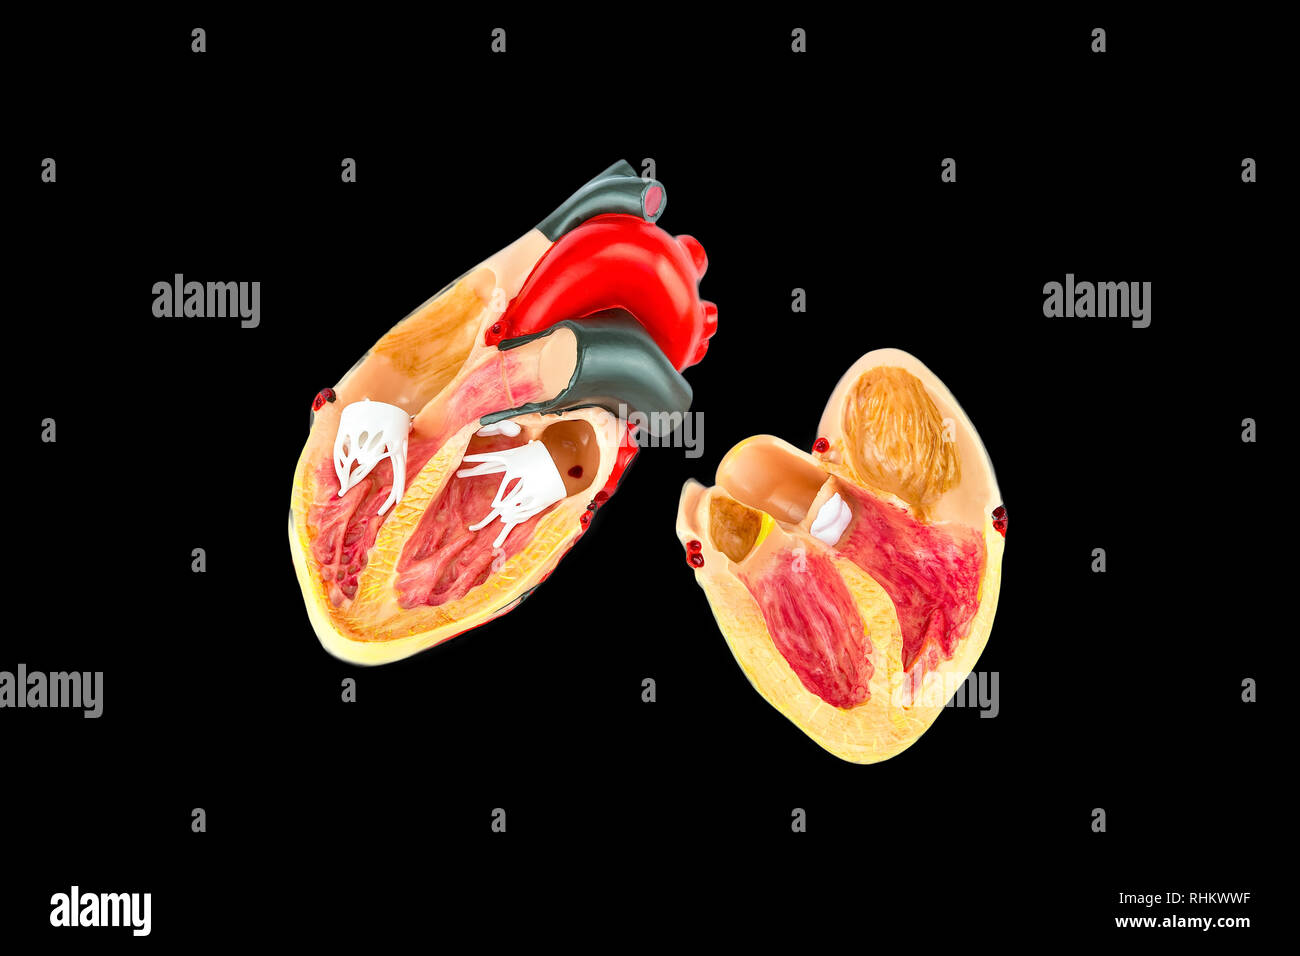 All'interno del cuore umano modello isolato su sfondo nero Foto Stock